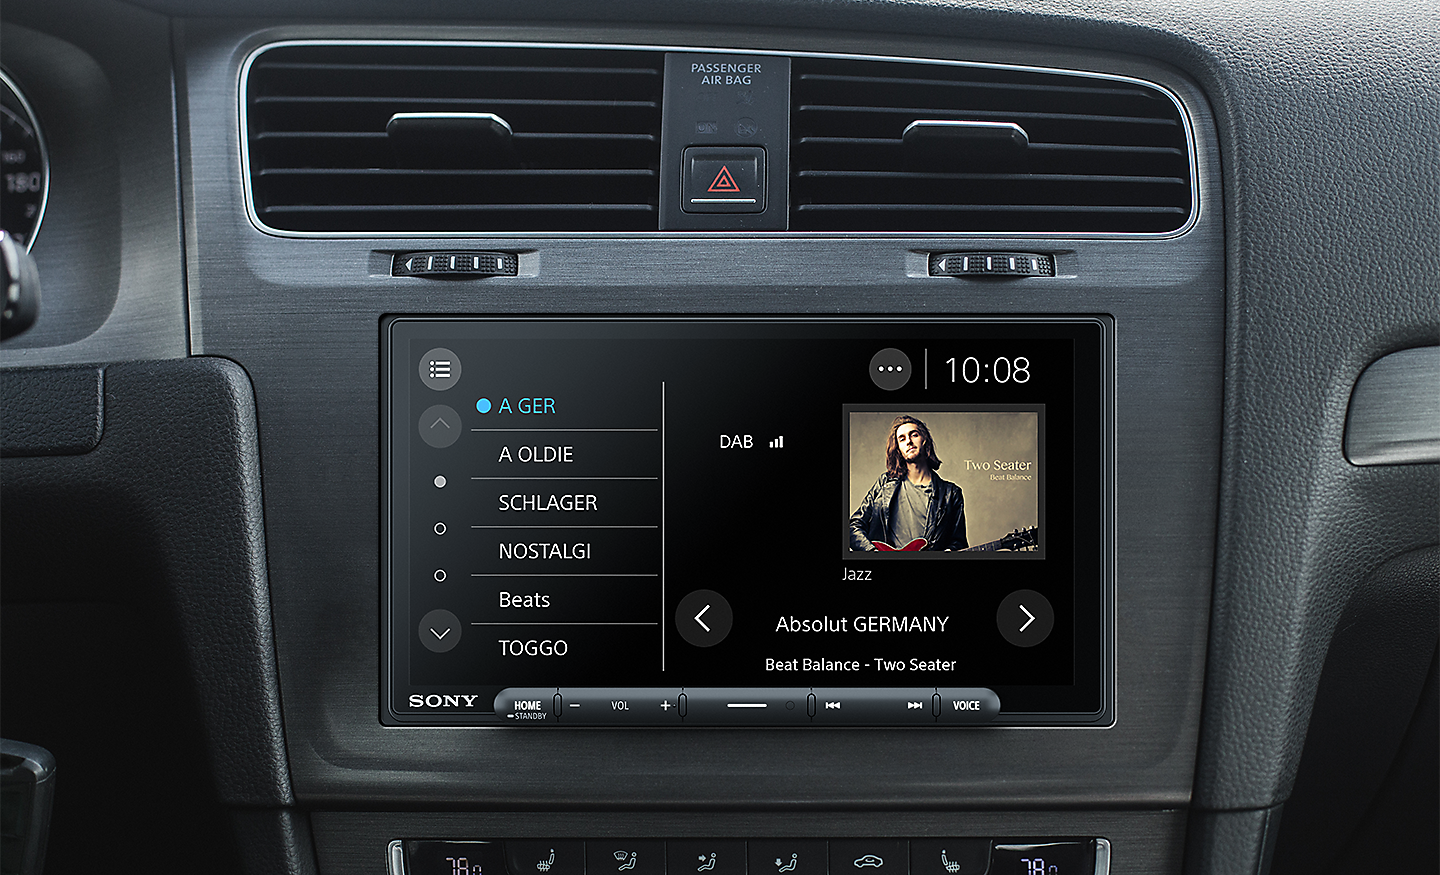 Bilde av XAV-AX6050 på et dashbord med et DAB-radiogrensesnitt på skjermen